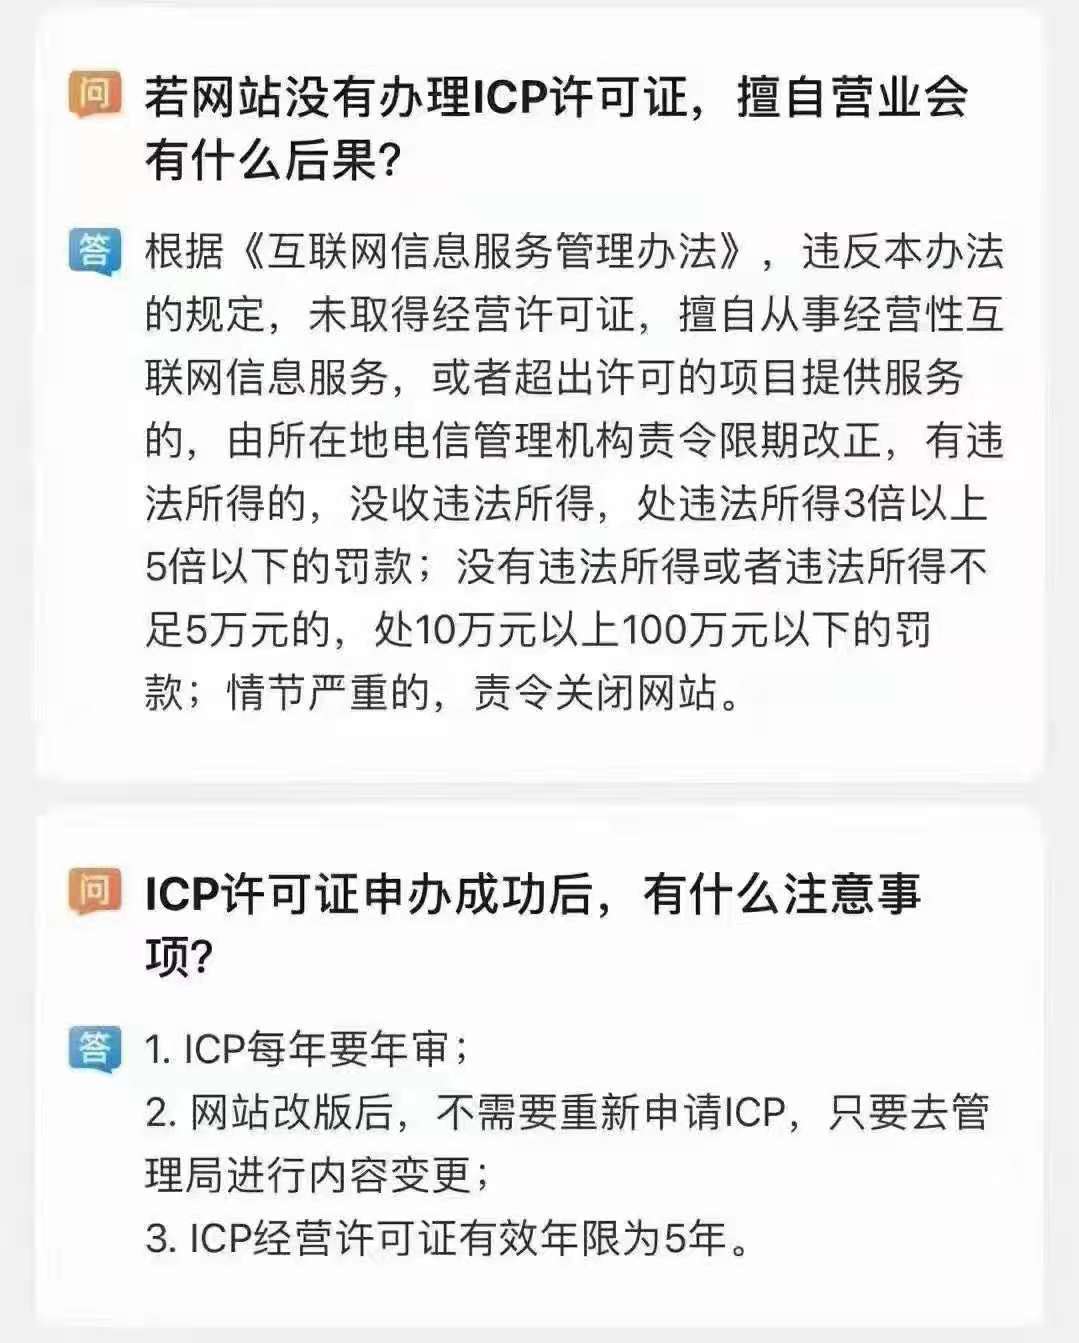 宝安ICP经营许可证申请材料 一站式服务